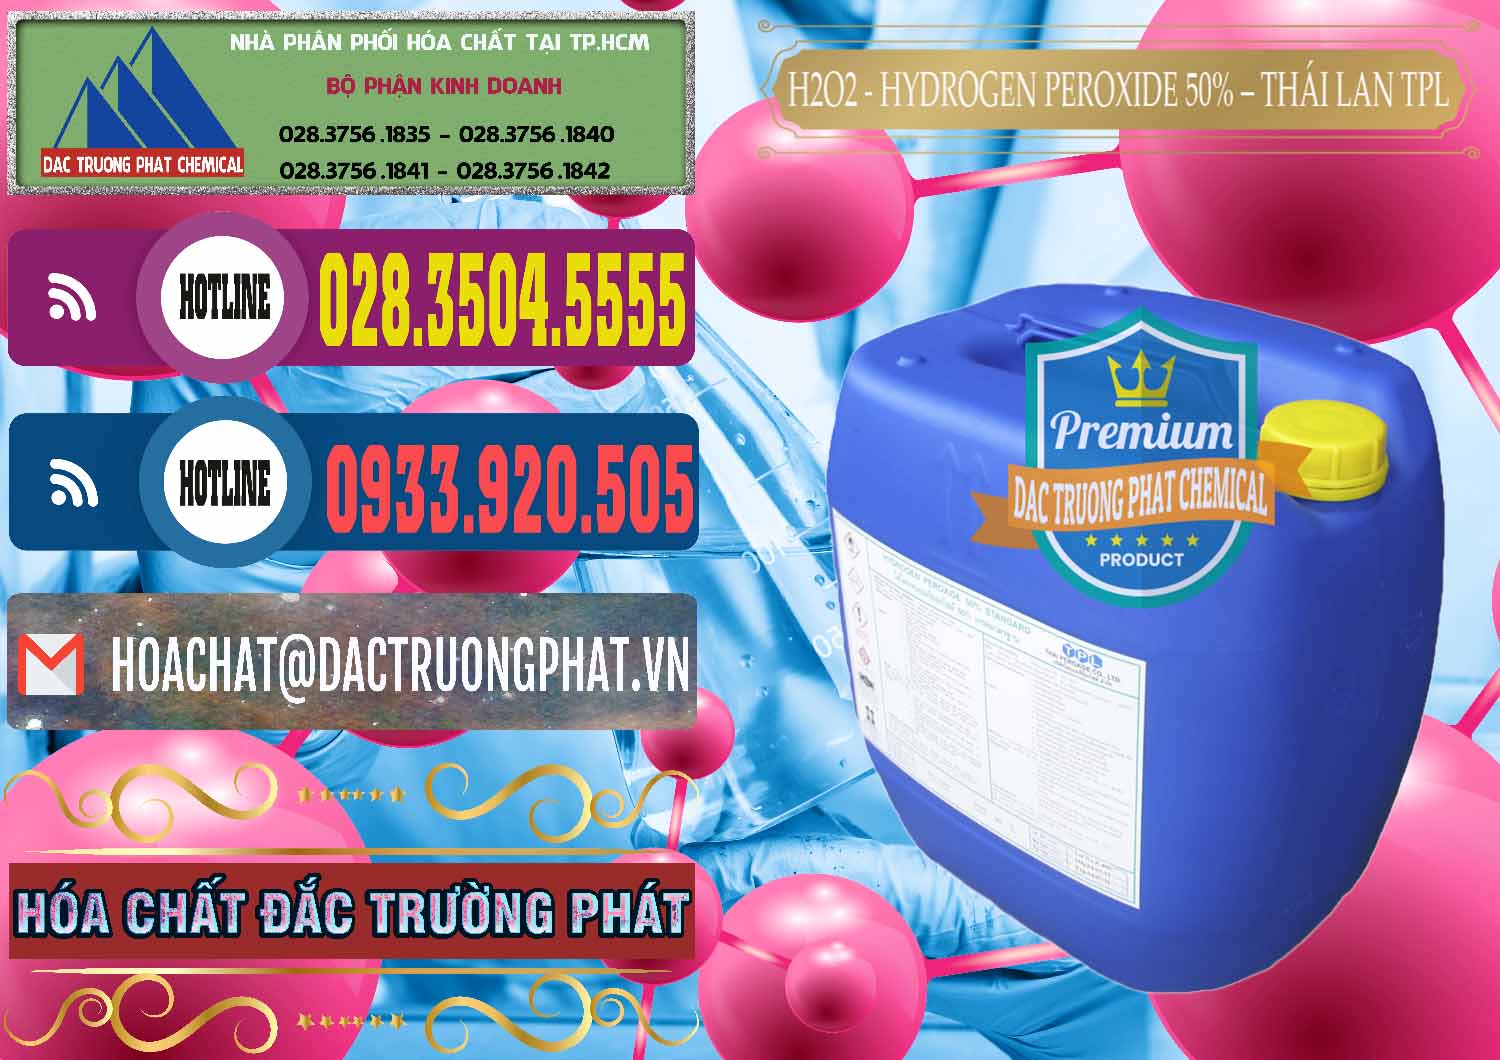 Cty cung cấp và bán H2O2 - Hydrogen Peroxide 50% Thái Lan TPL - 0076 - Cty kinh doanh & cung cấp hóa chất tại TP.HCM - muabanhoachat.com.vn